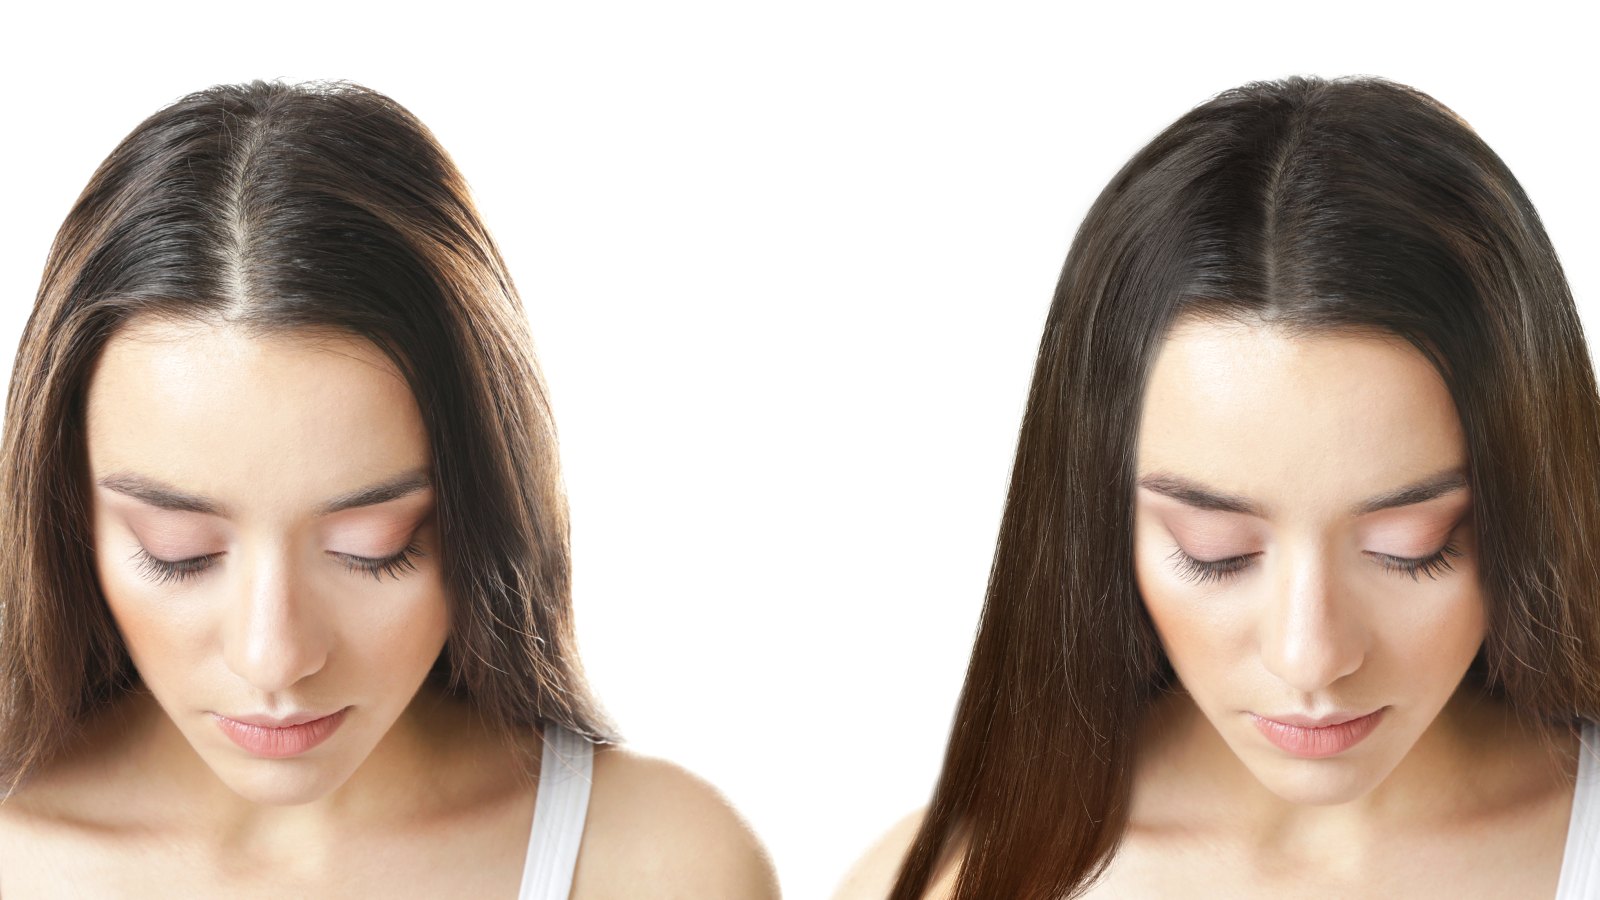 hair growth treatments